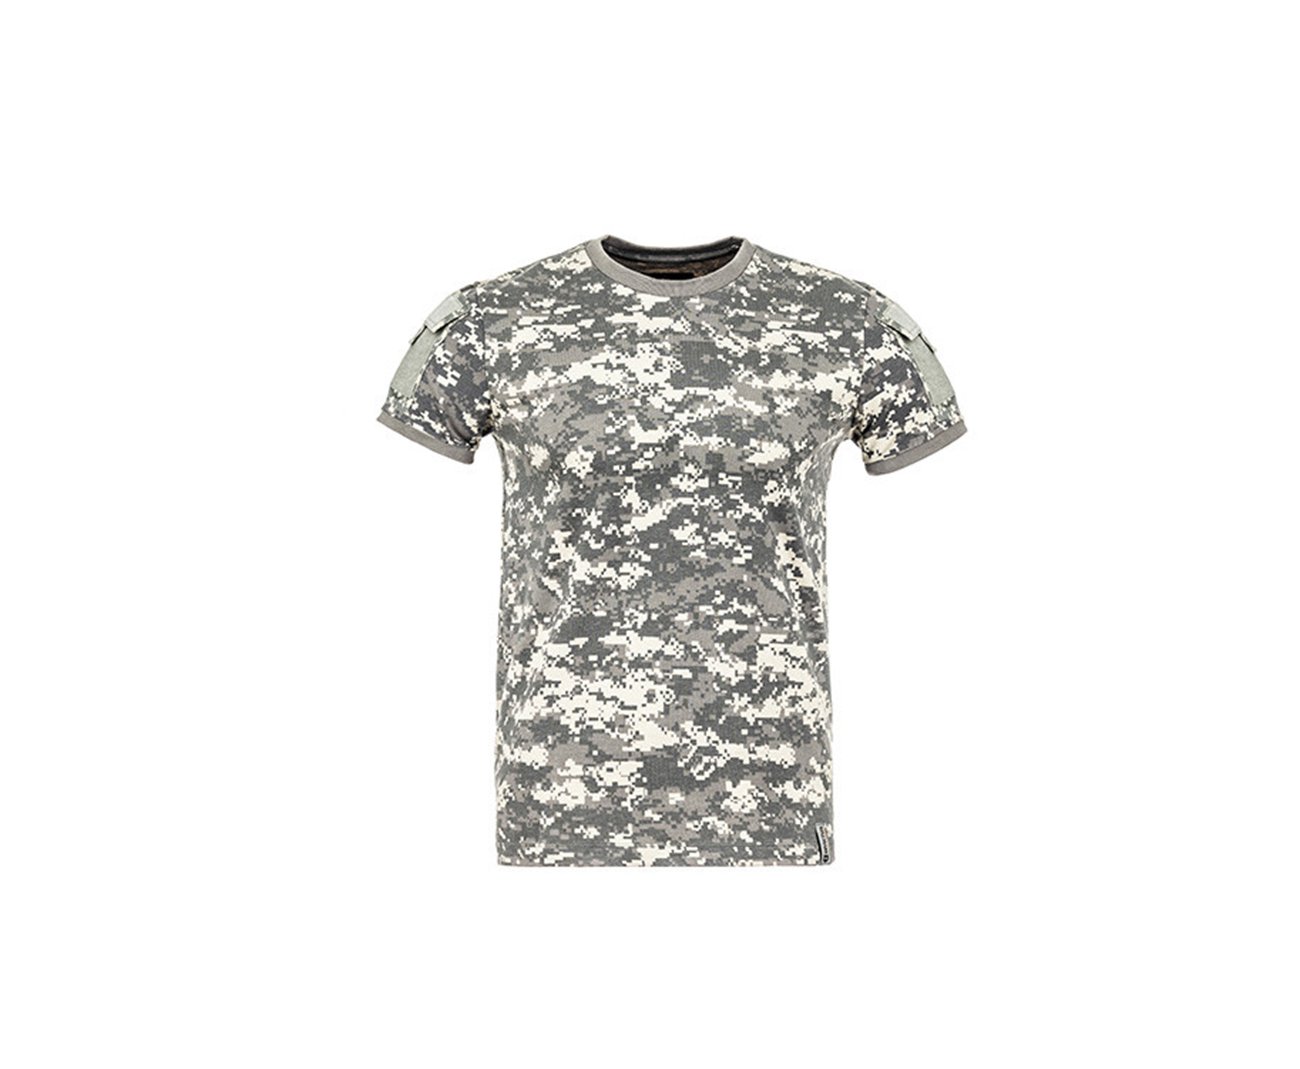 Camiseta T-shirt Army Camuflada Digital Acu - Invictus